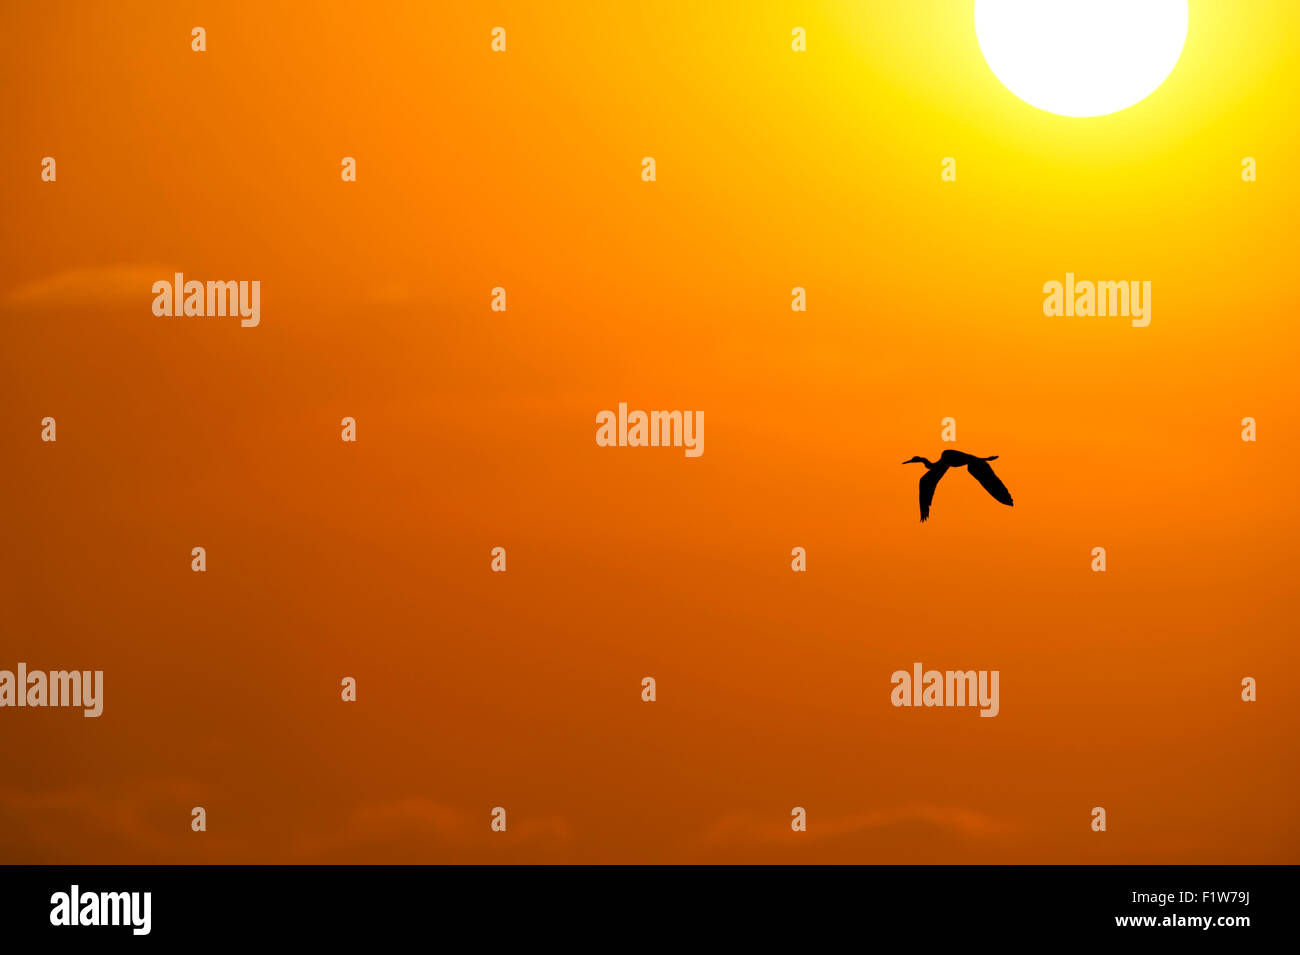 Silueta de aves volar es un gran pájaro volando contra un sol amarillo y naranja brillante con el sol alto en el cielo en un s Foto de stock